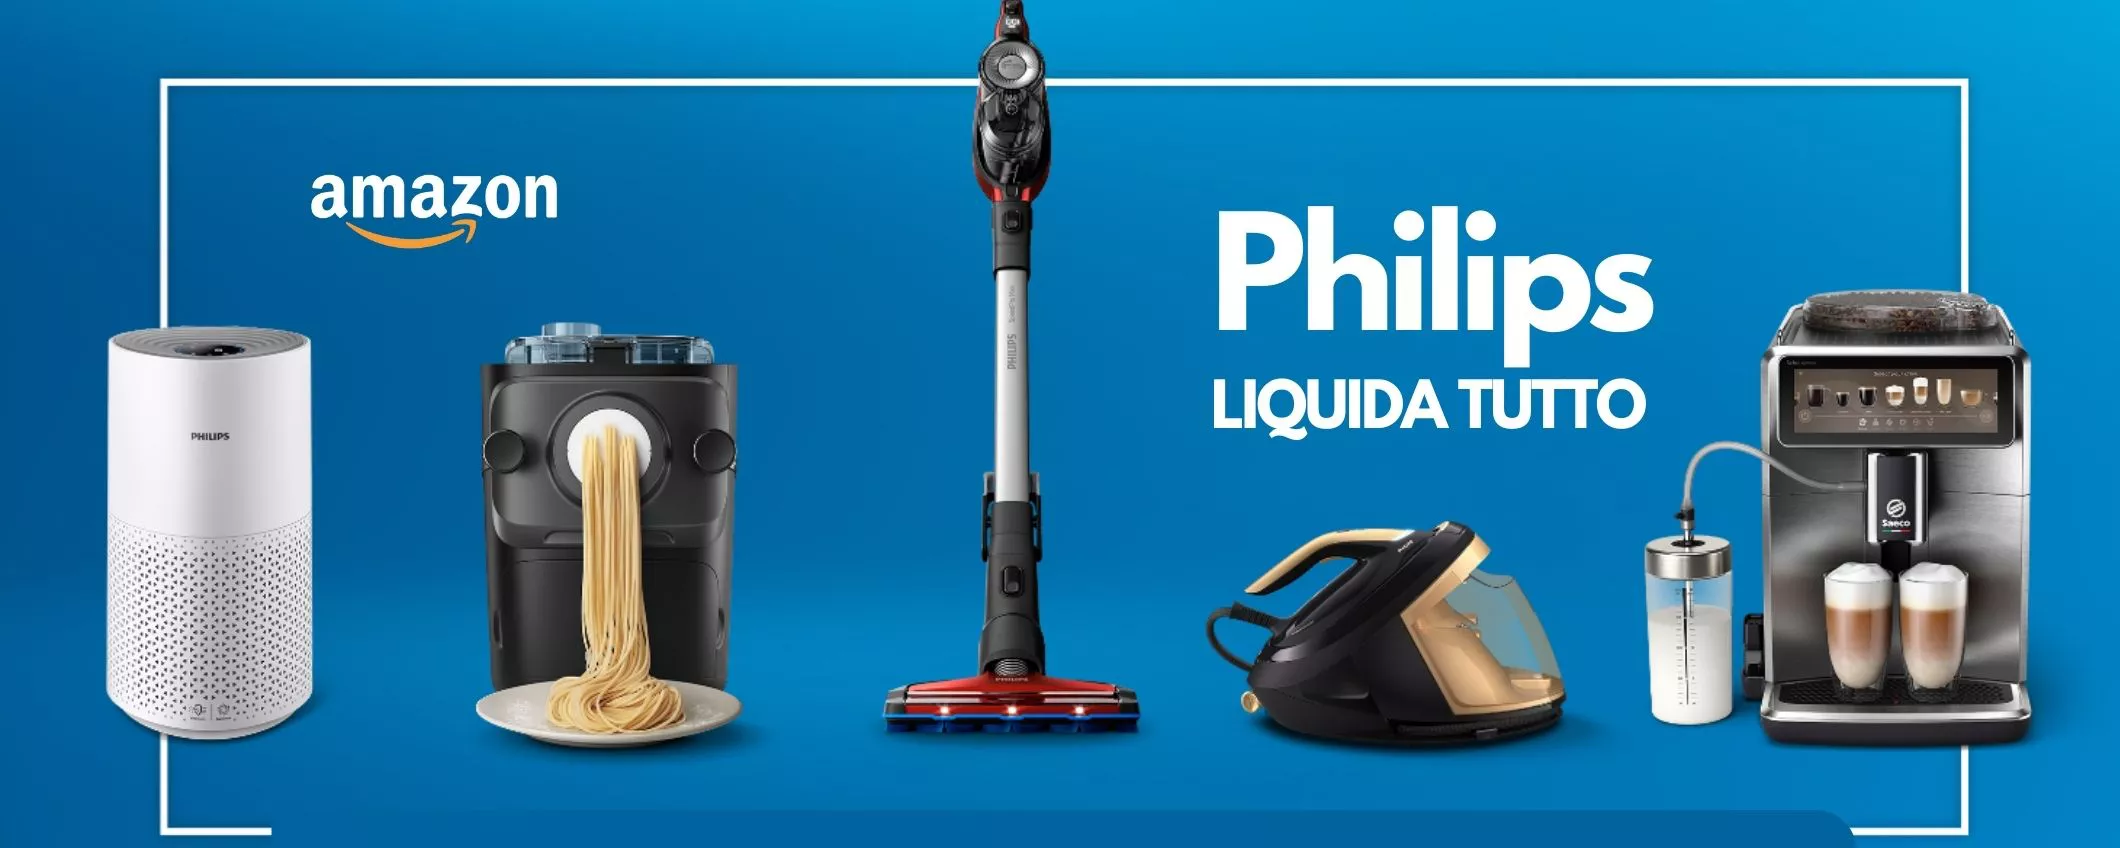 Philips LIQUIDA TUTTO con sconti fino al 45% su robot, aspirapolveri ed  elettrodomestici SMART - Webnews